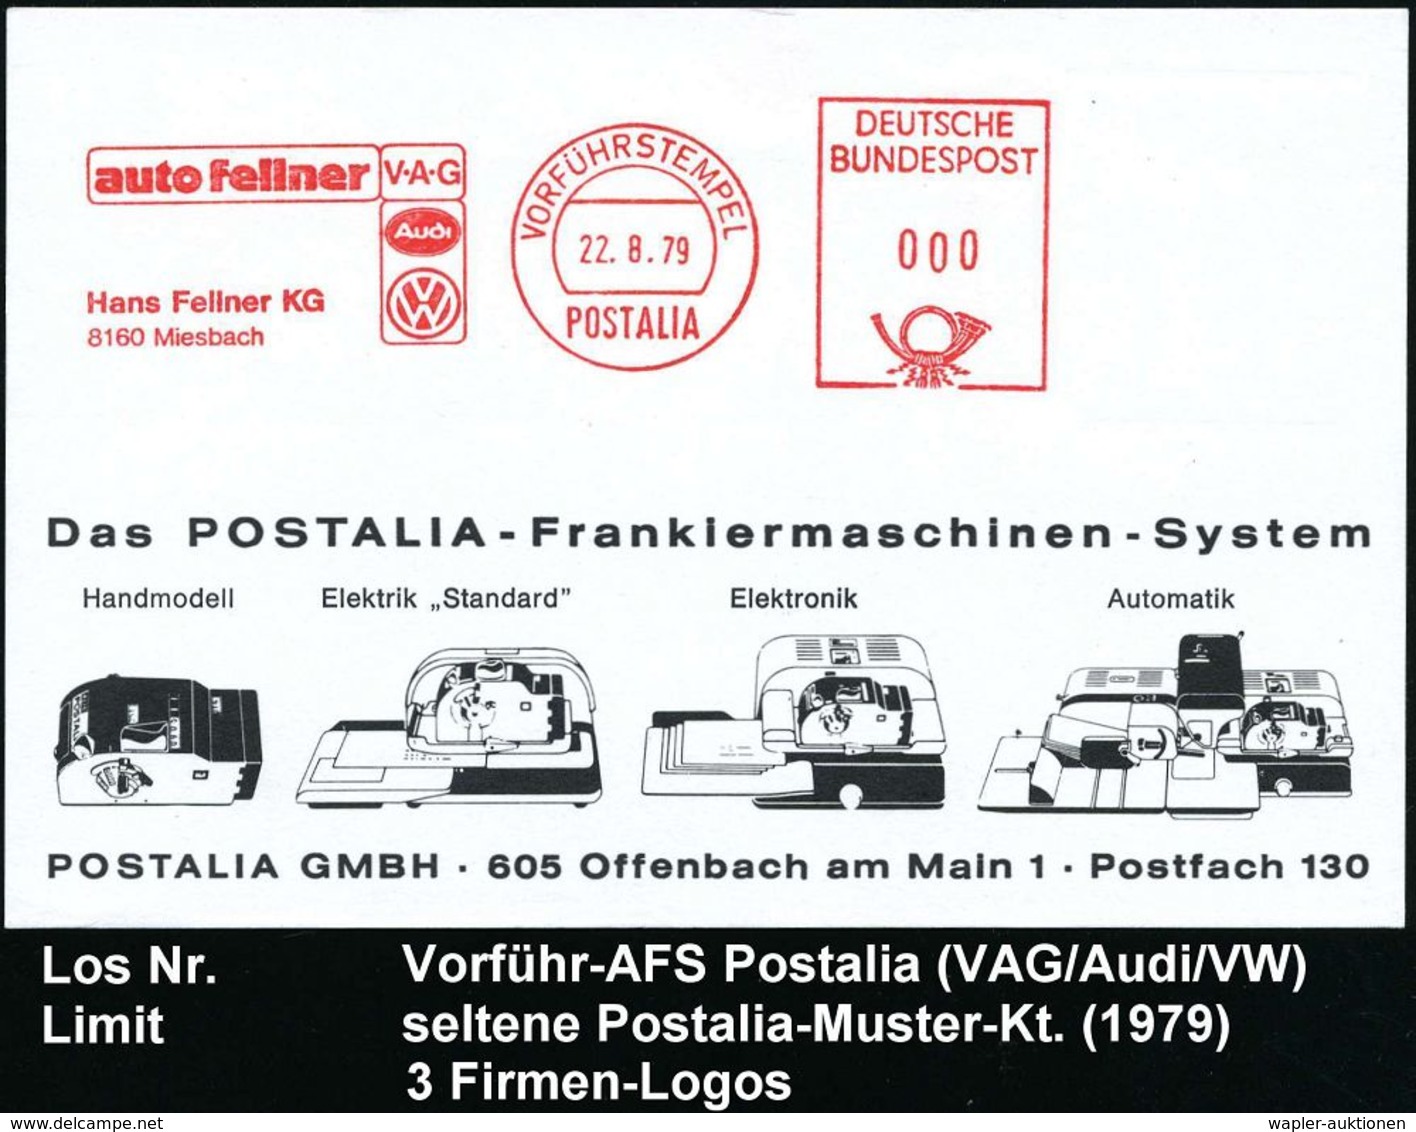 VOLKSWAGEN / VW / K.-D.-F.-WAGEN / PORSCHE : 8160 Miesbach 1979 (22.8.) AFS: VORFÜRHSTEMPEL/POSTALIA/auto Fellner/V-A-G/ - Autos